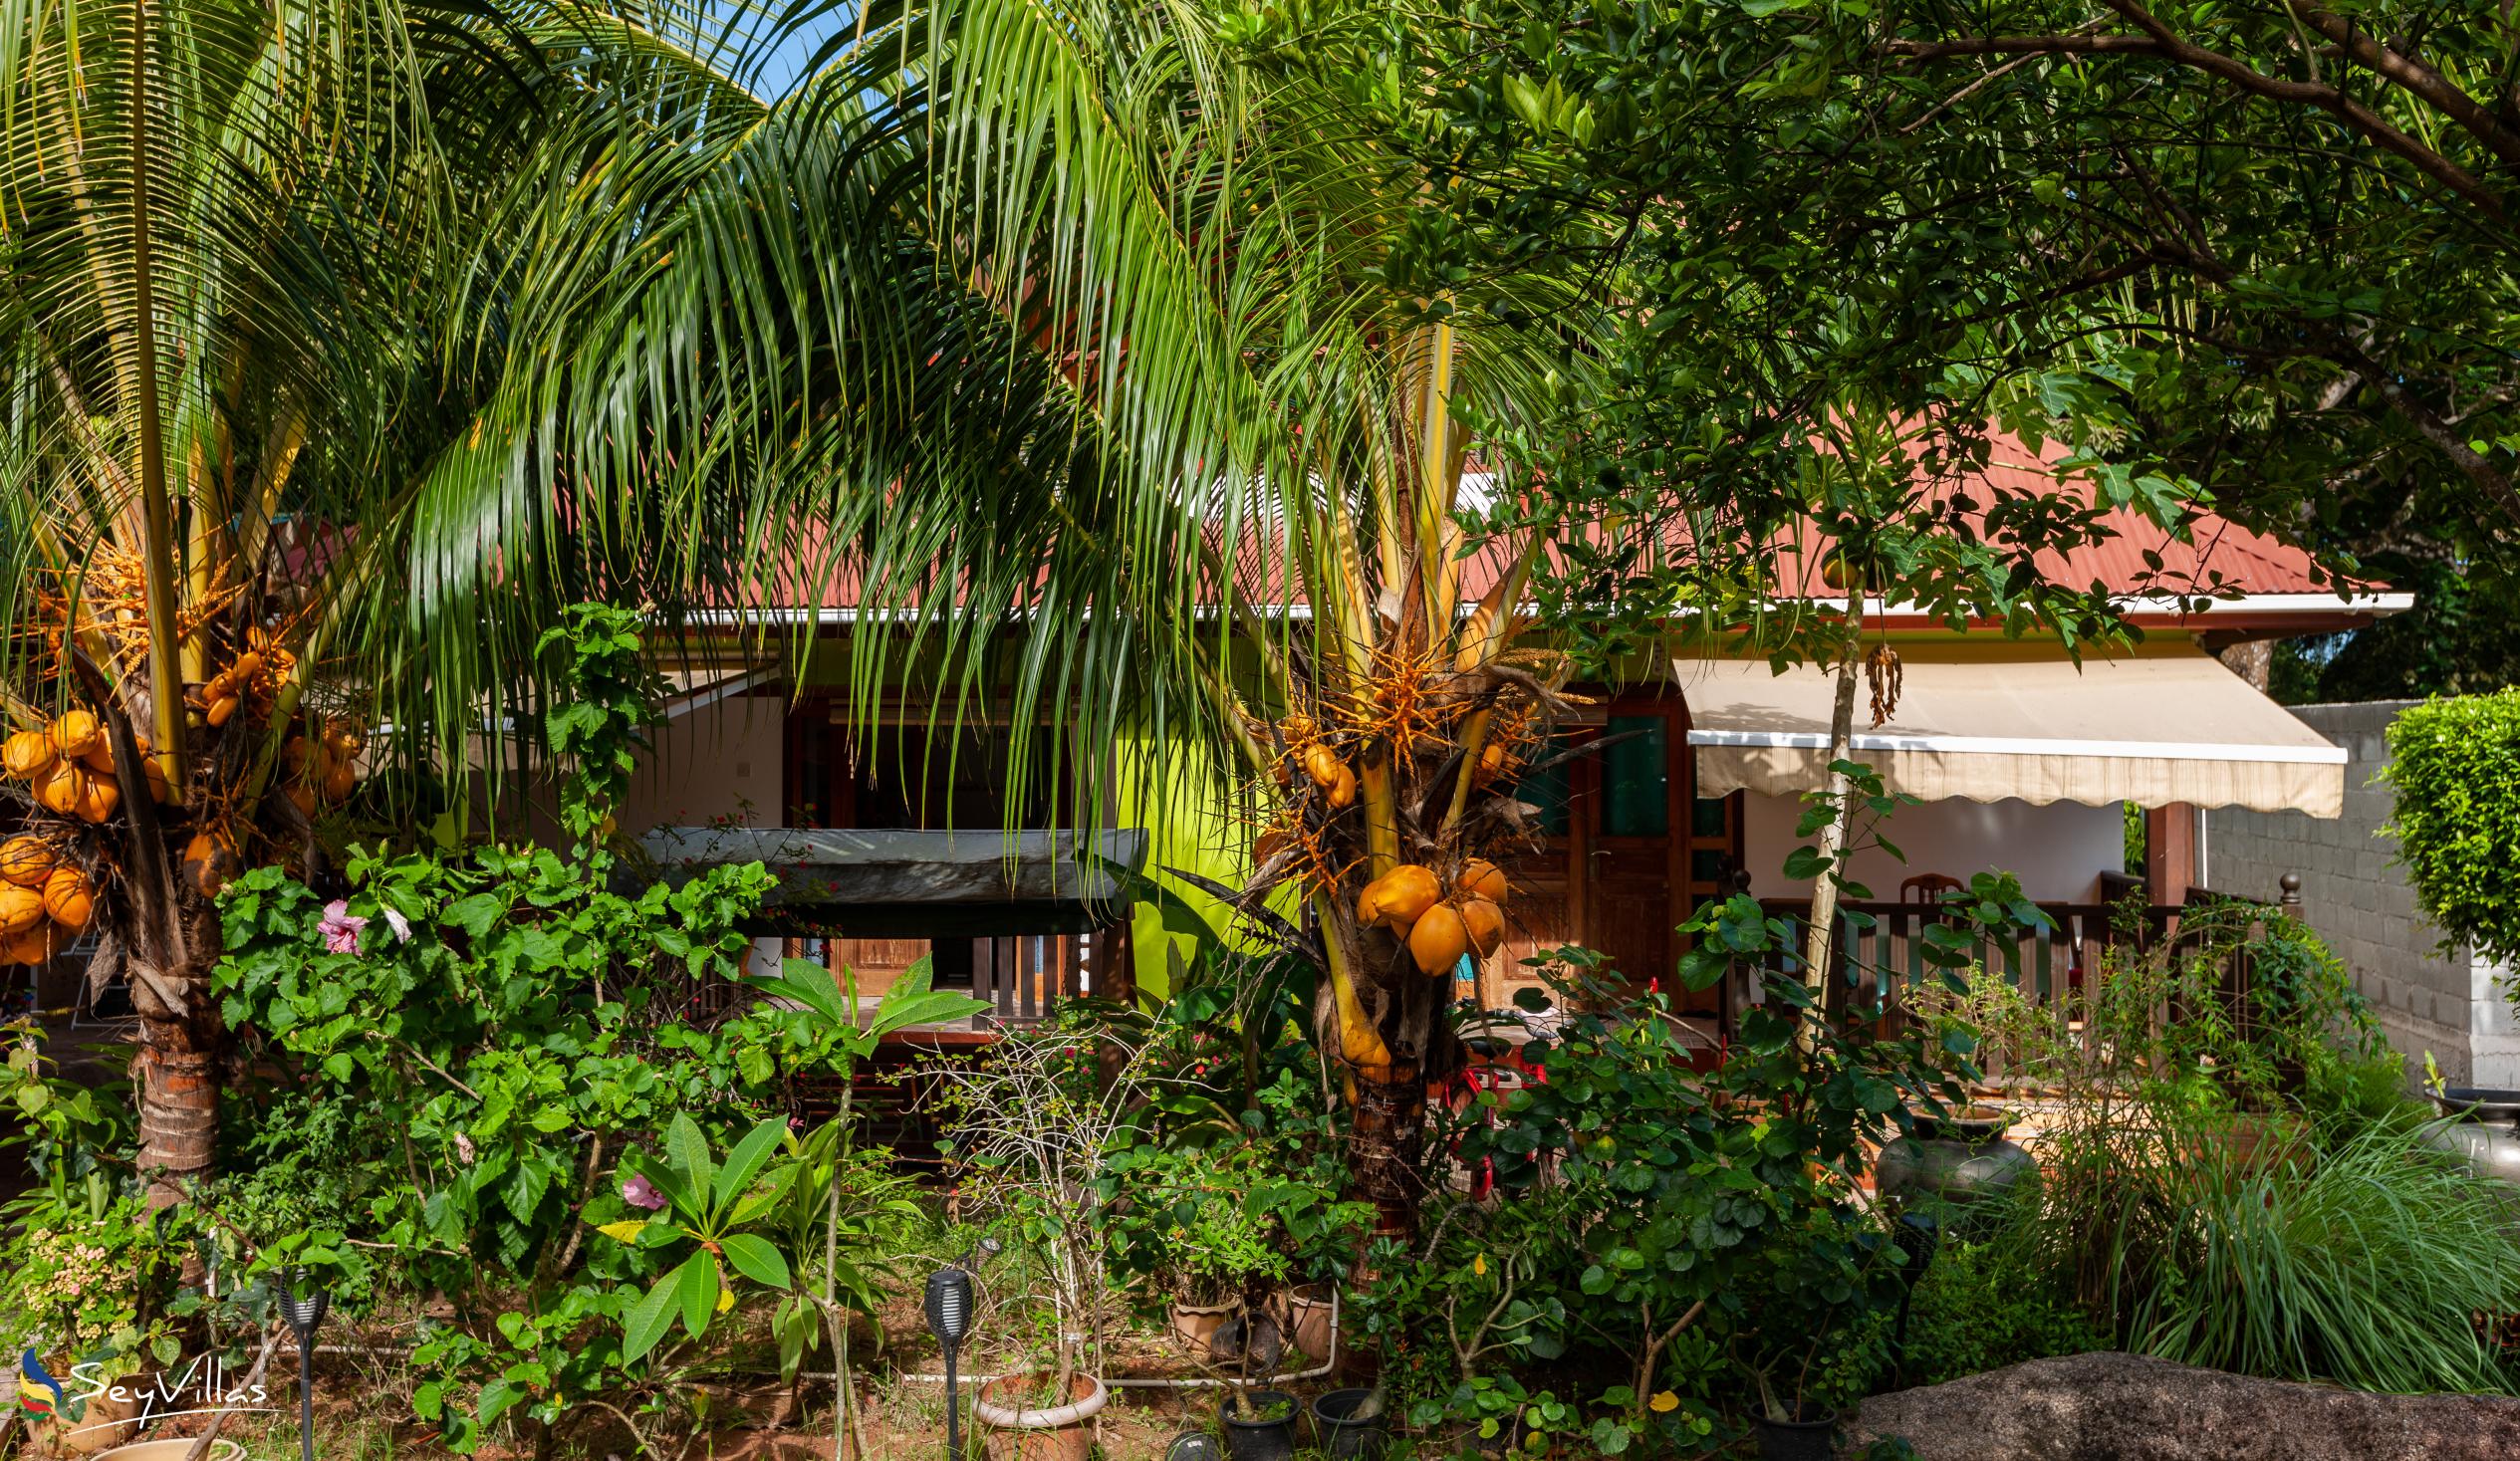 Photo 15: Chloe's Cottage - Outdoor area - La Digue (Seychelles)